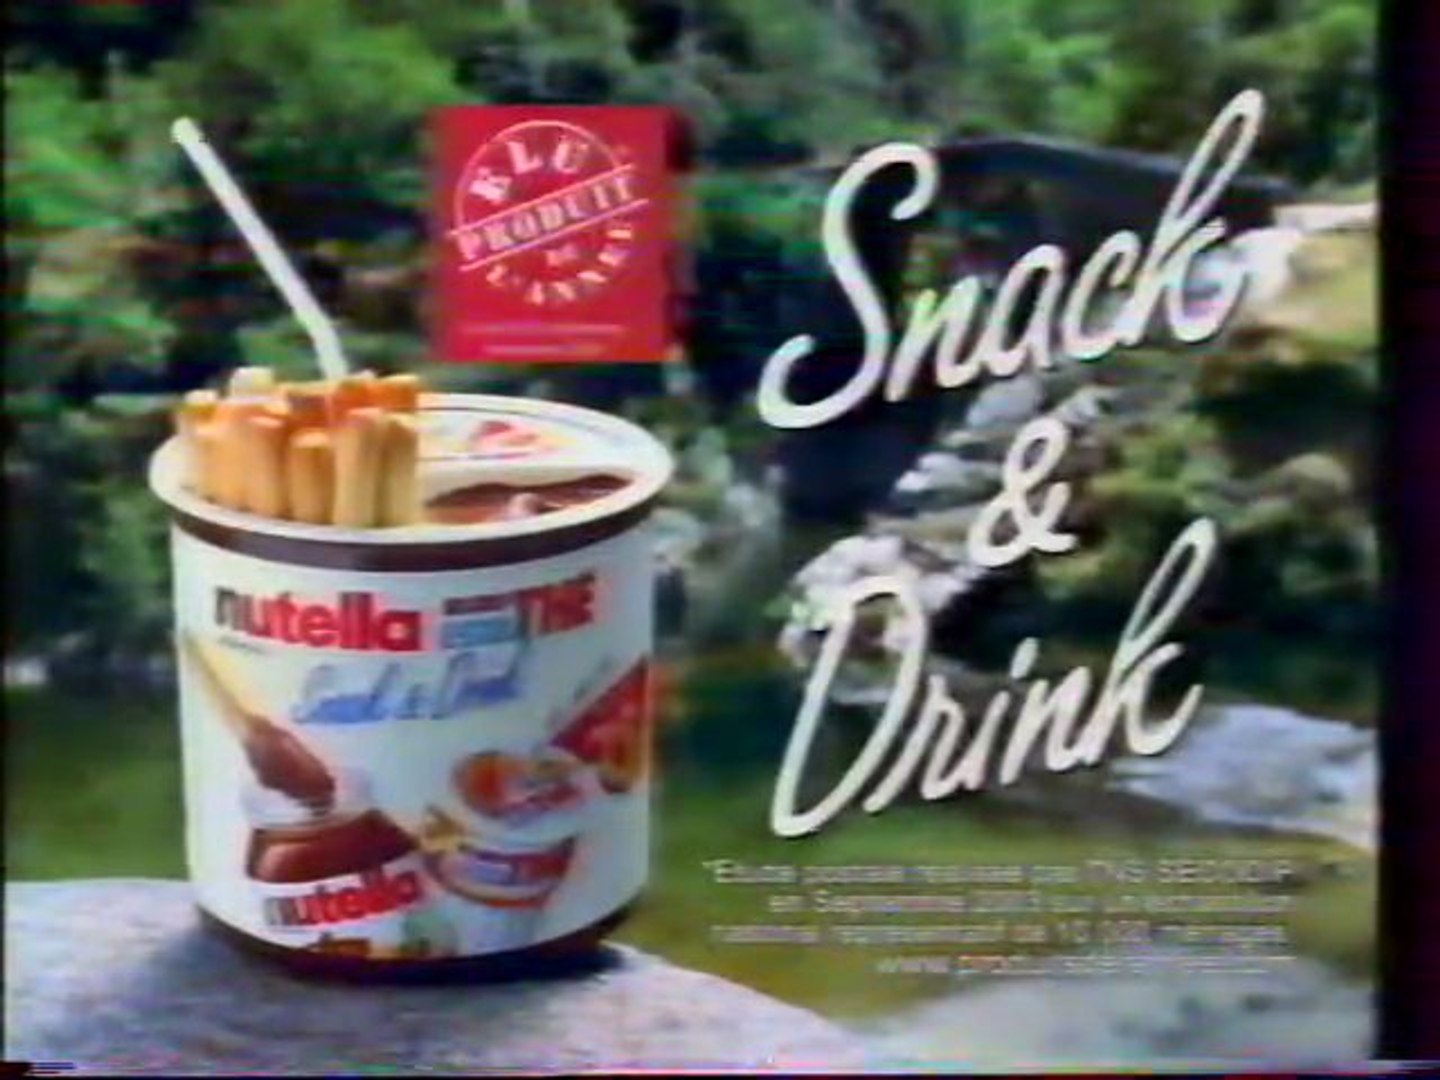 Publicité Snack & Drink Nutella 2004 - Vidéo Dailymotion